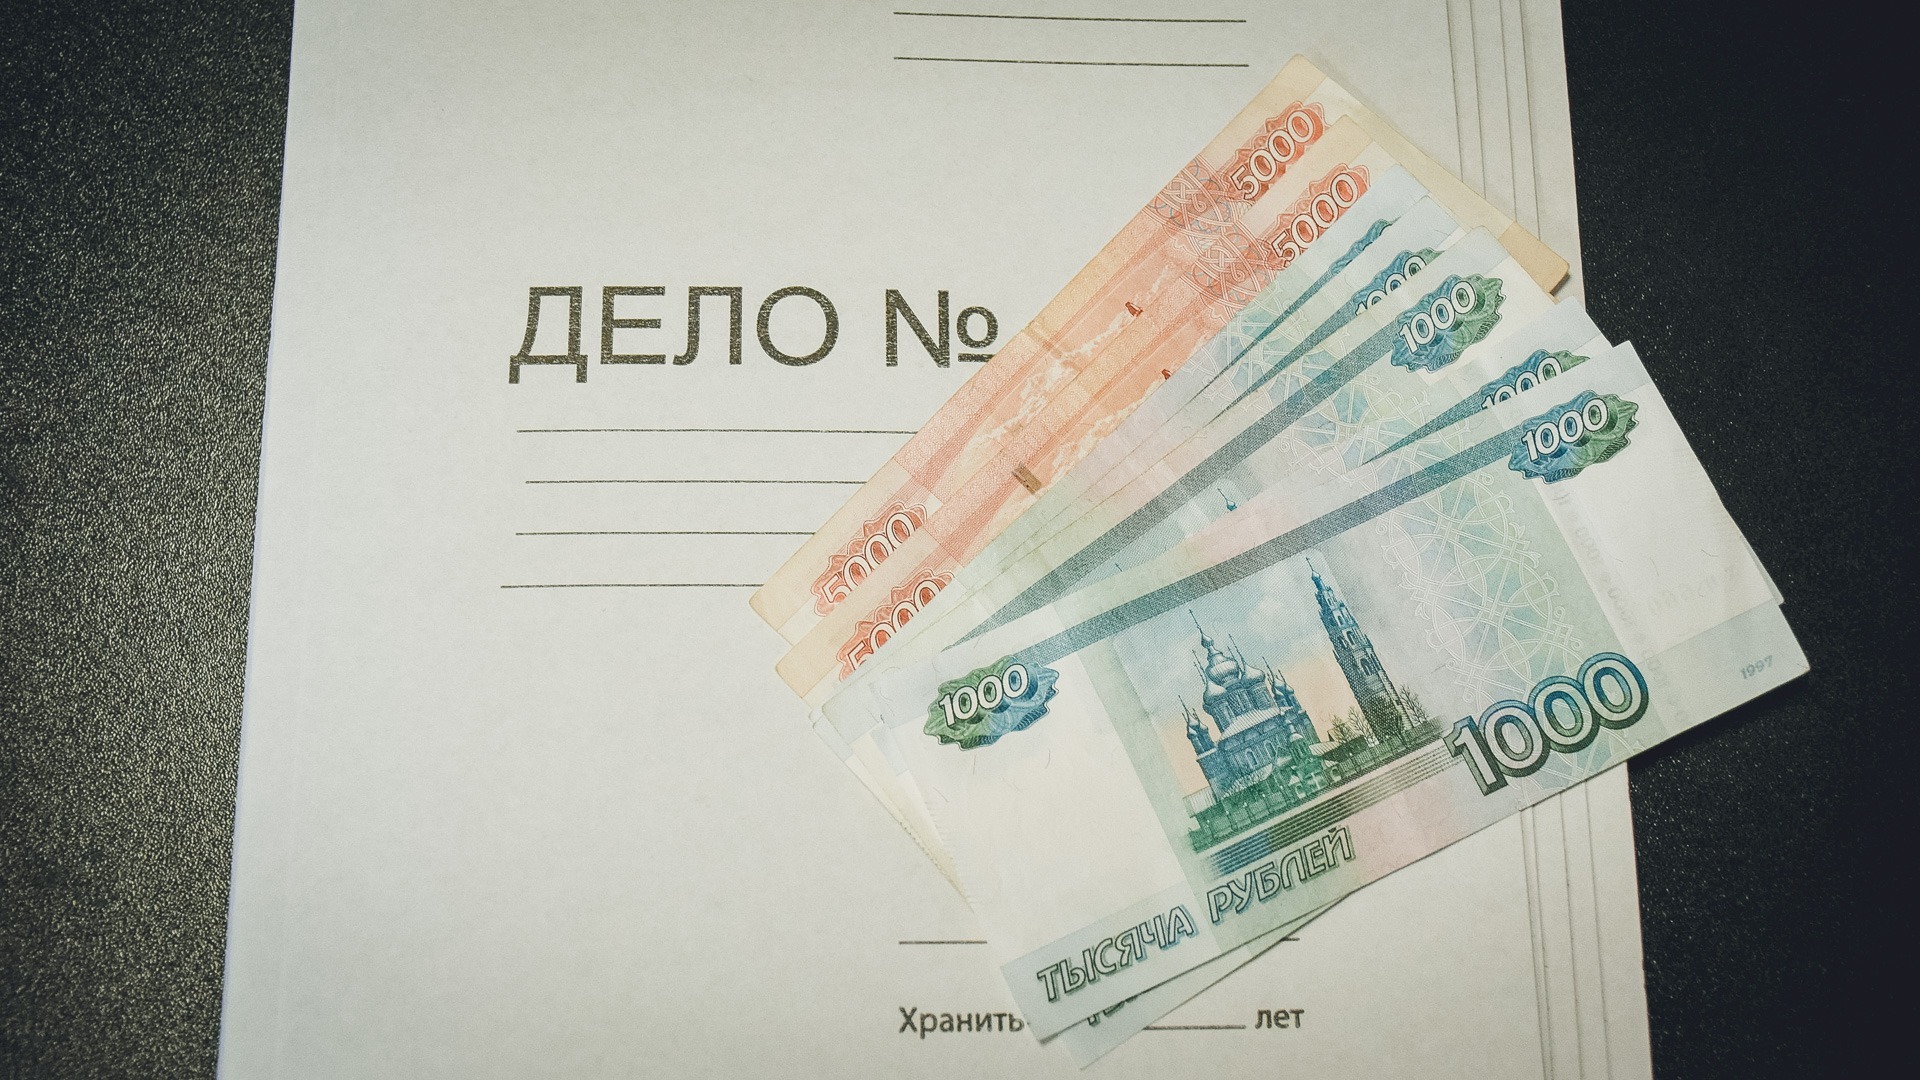 57 уголовных дел возбуждено в Нижегородской области из-за фальшивых денег